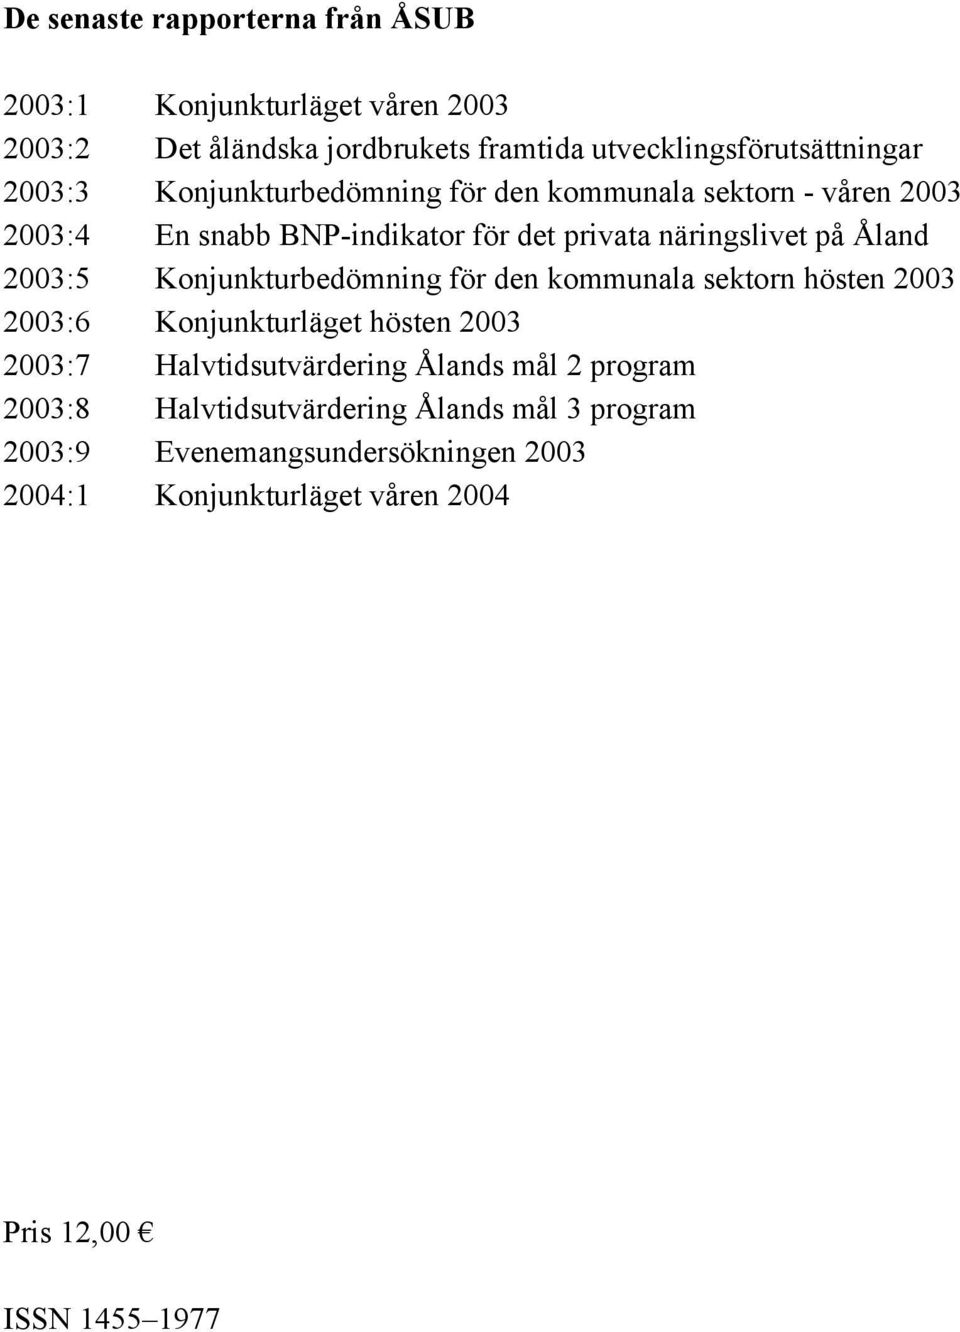 Konjunkturbedömning för den kommunala sektorn hösten 2003 2003:6 Konjunkturläget hösten 2003 2003:7 Halvtidsutvärdering Ålands mål 2 program